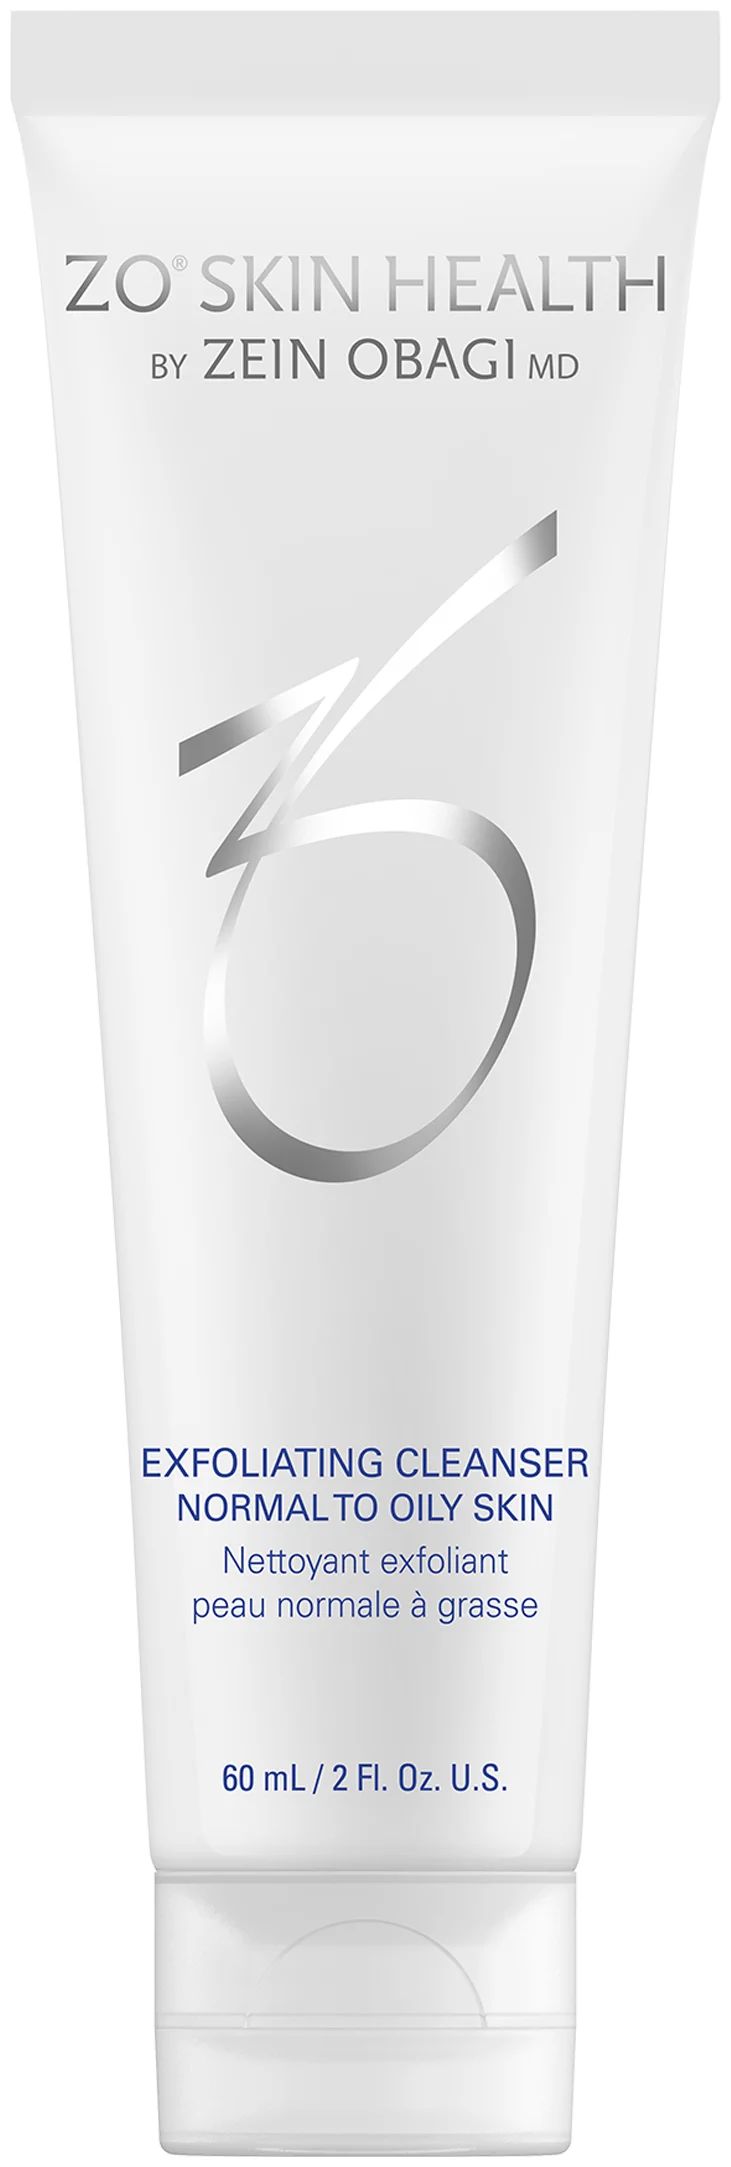 Очищающее средство ZO SKIN HEALTH by ZEIN OBAGI с отшелушивающим действием, 60 мл витэкс clean skin маска фольга серебряная для лица от прыщей и черных точек 75